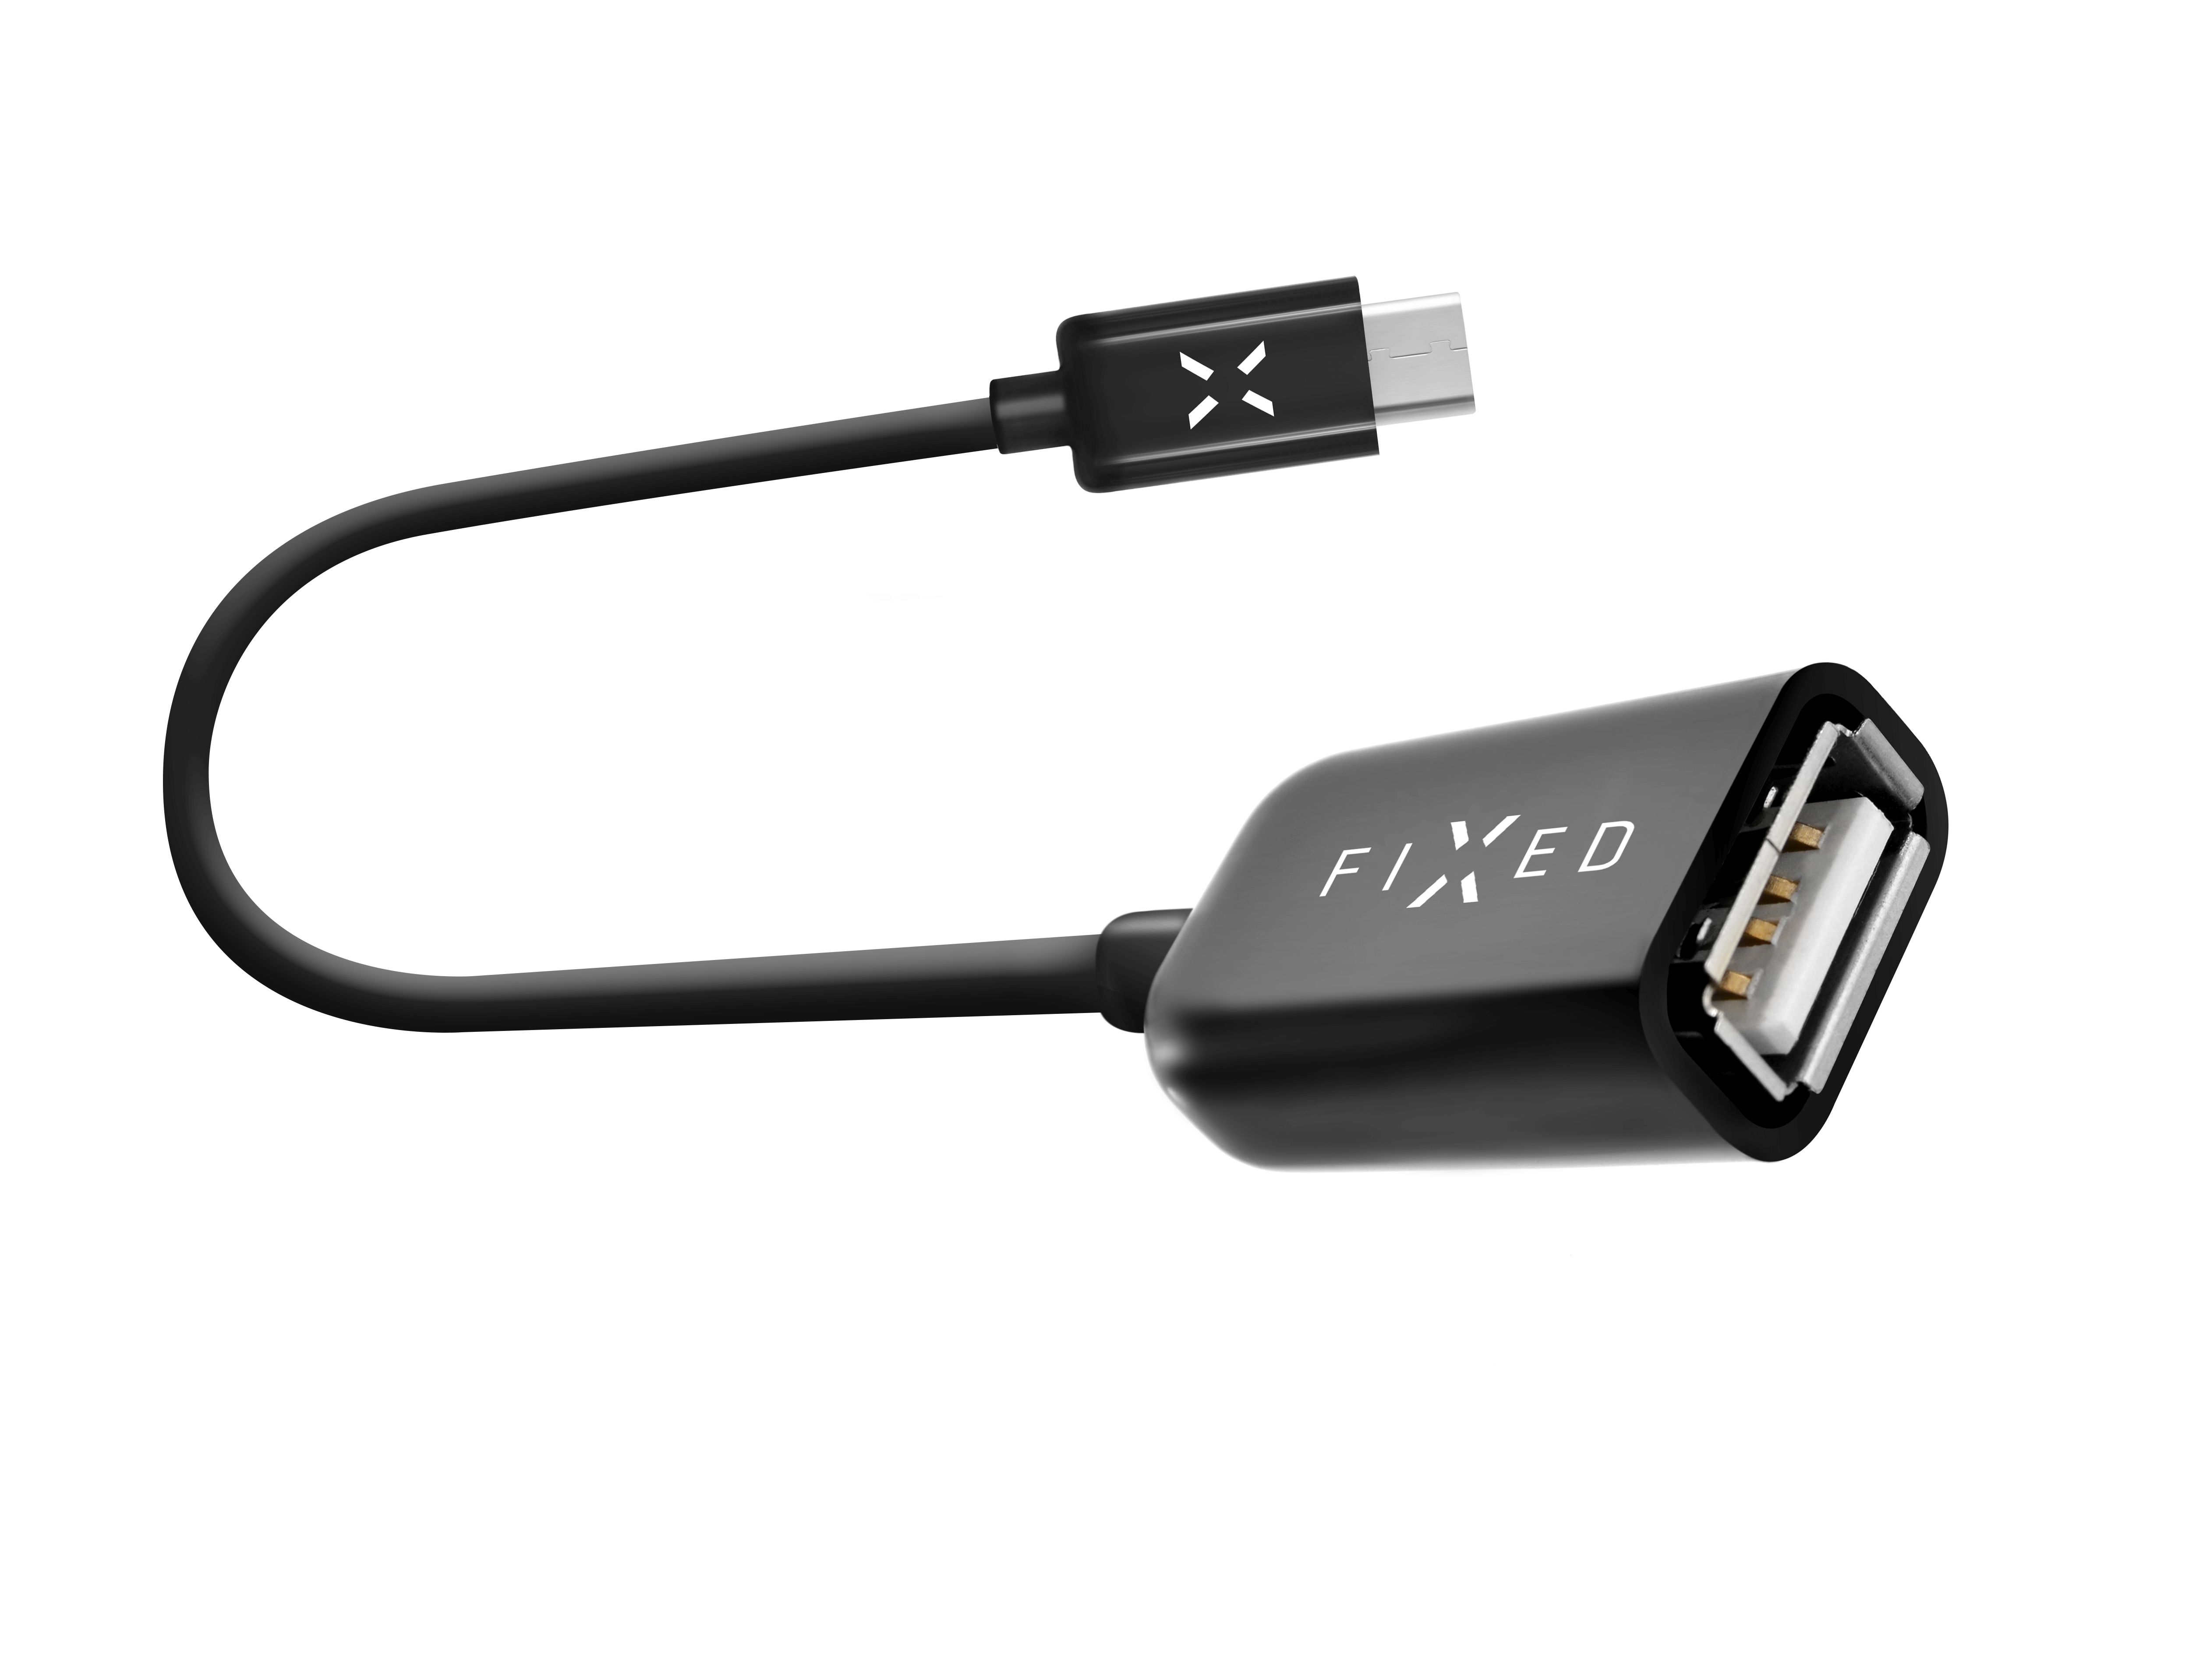 USB-C OTG adaptér FIXED pro mobilní telefony a tablety, USB 2.0, černý